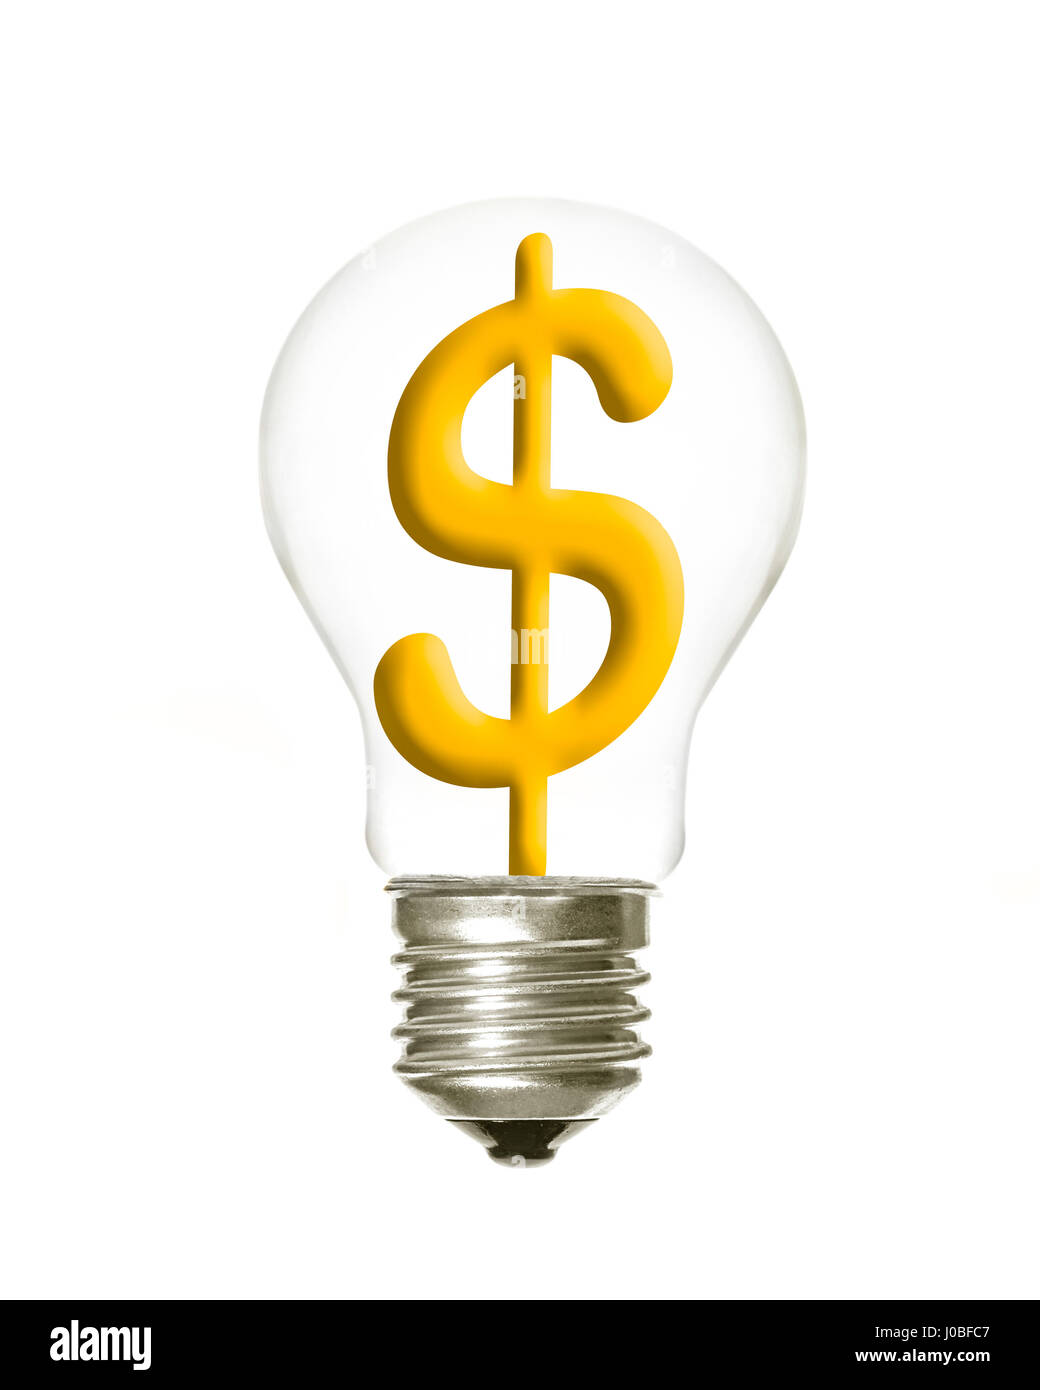 D'une ampoule avec le symbole du dollar à l'intérieur sur un fond blanc Banque D'Images